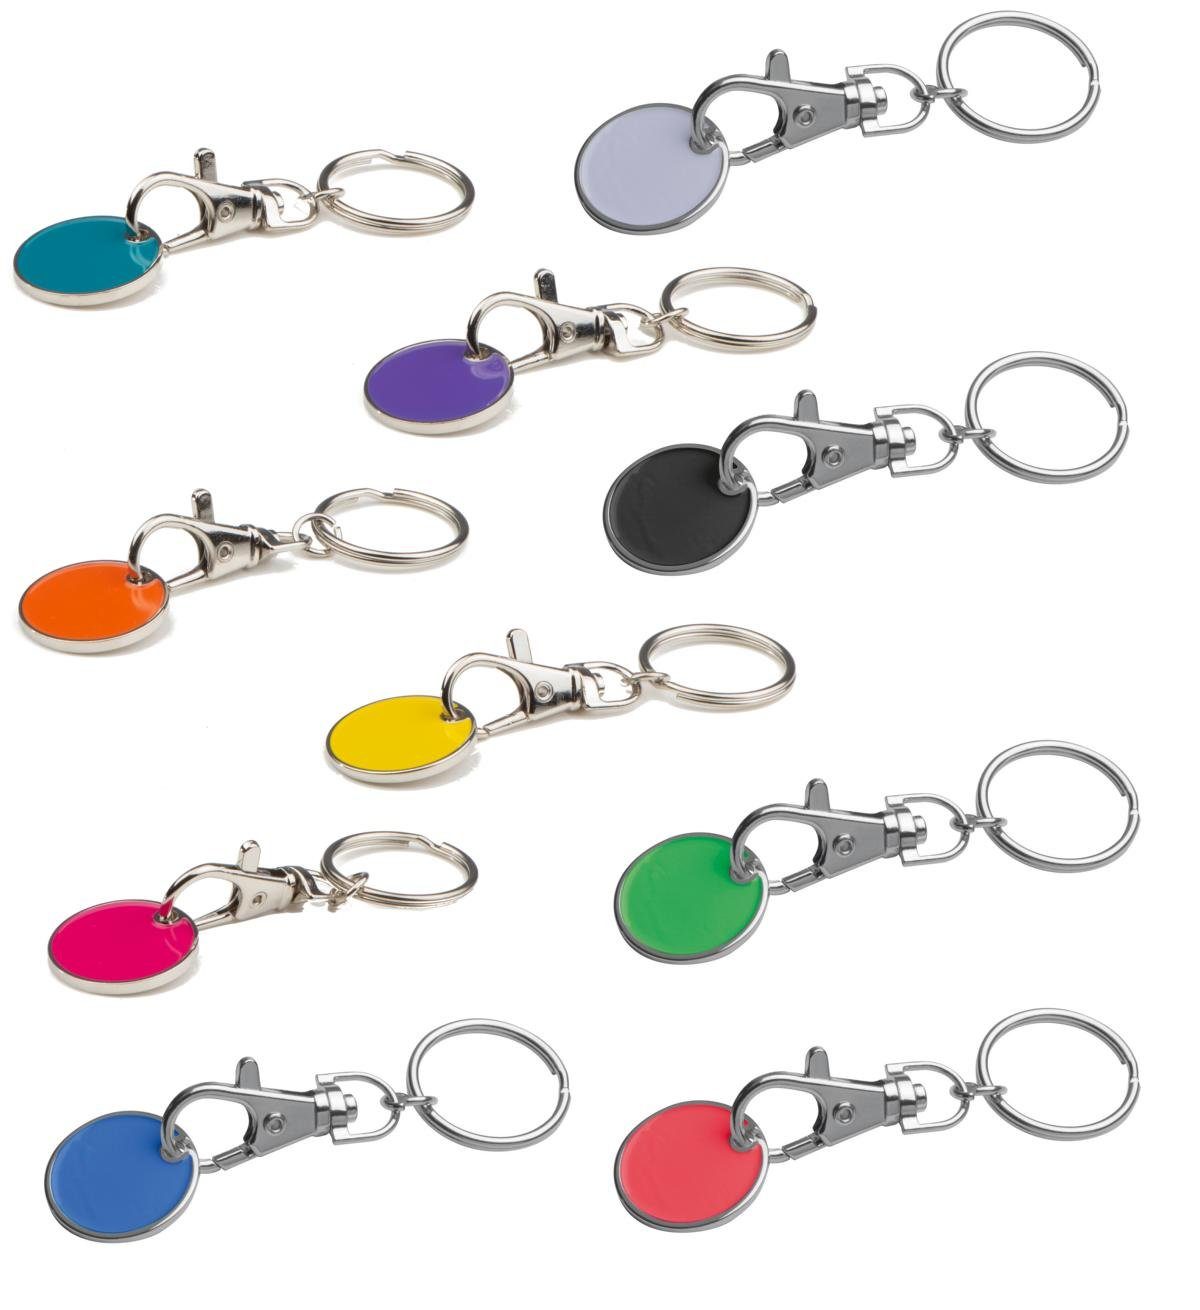 Macma Schlüsselanhänger 10x Metall Schlüsselanhänger mit Einkaufschip / 10 verschiedene Farben